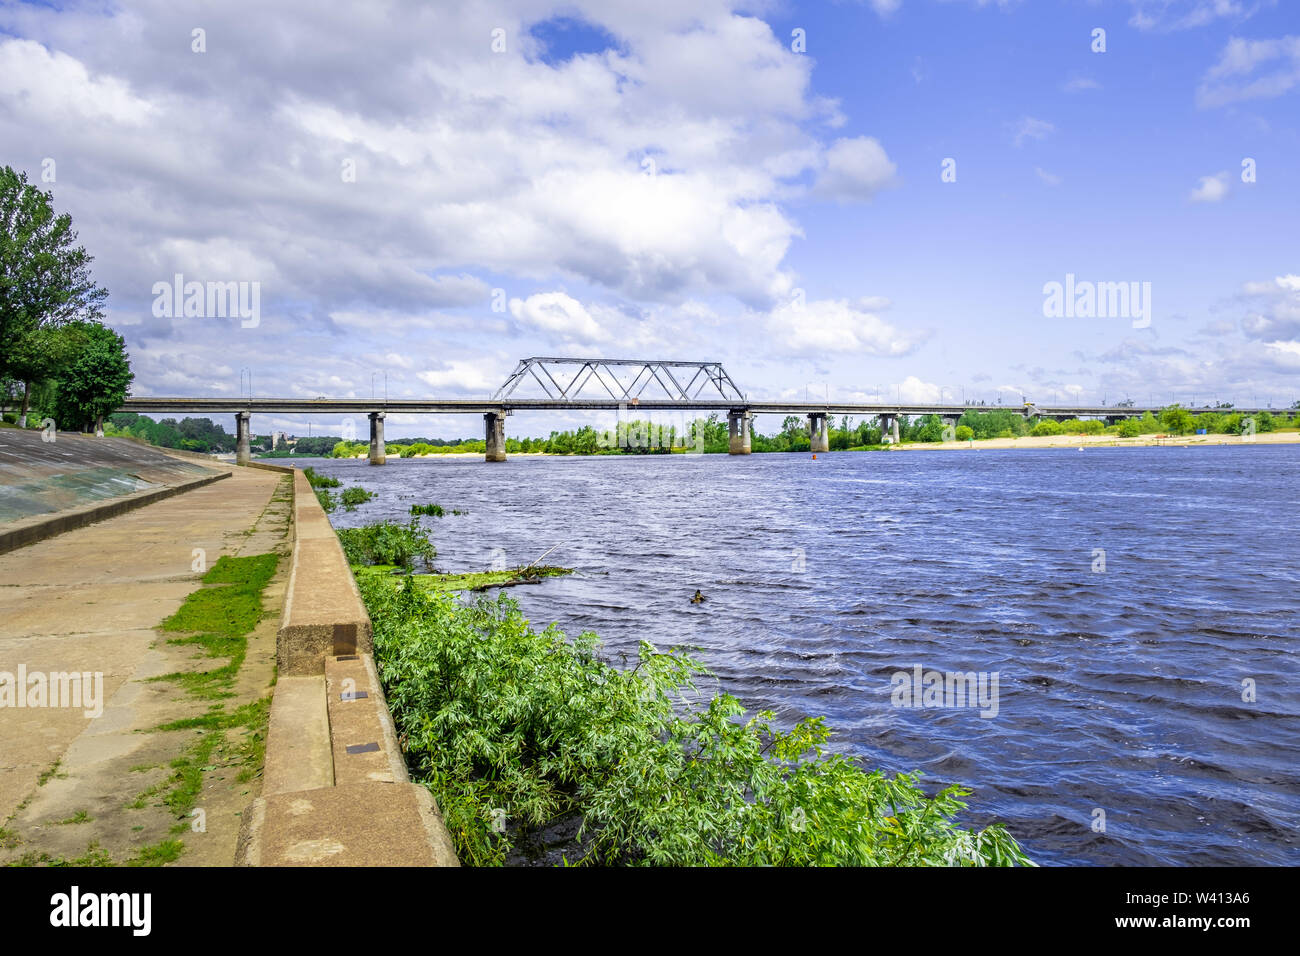 Industrial bridge over Pripyat river in Belarus Stock Photo